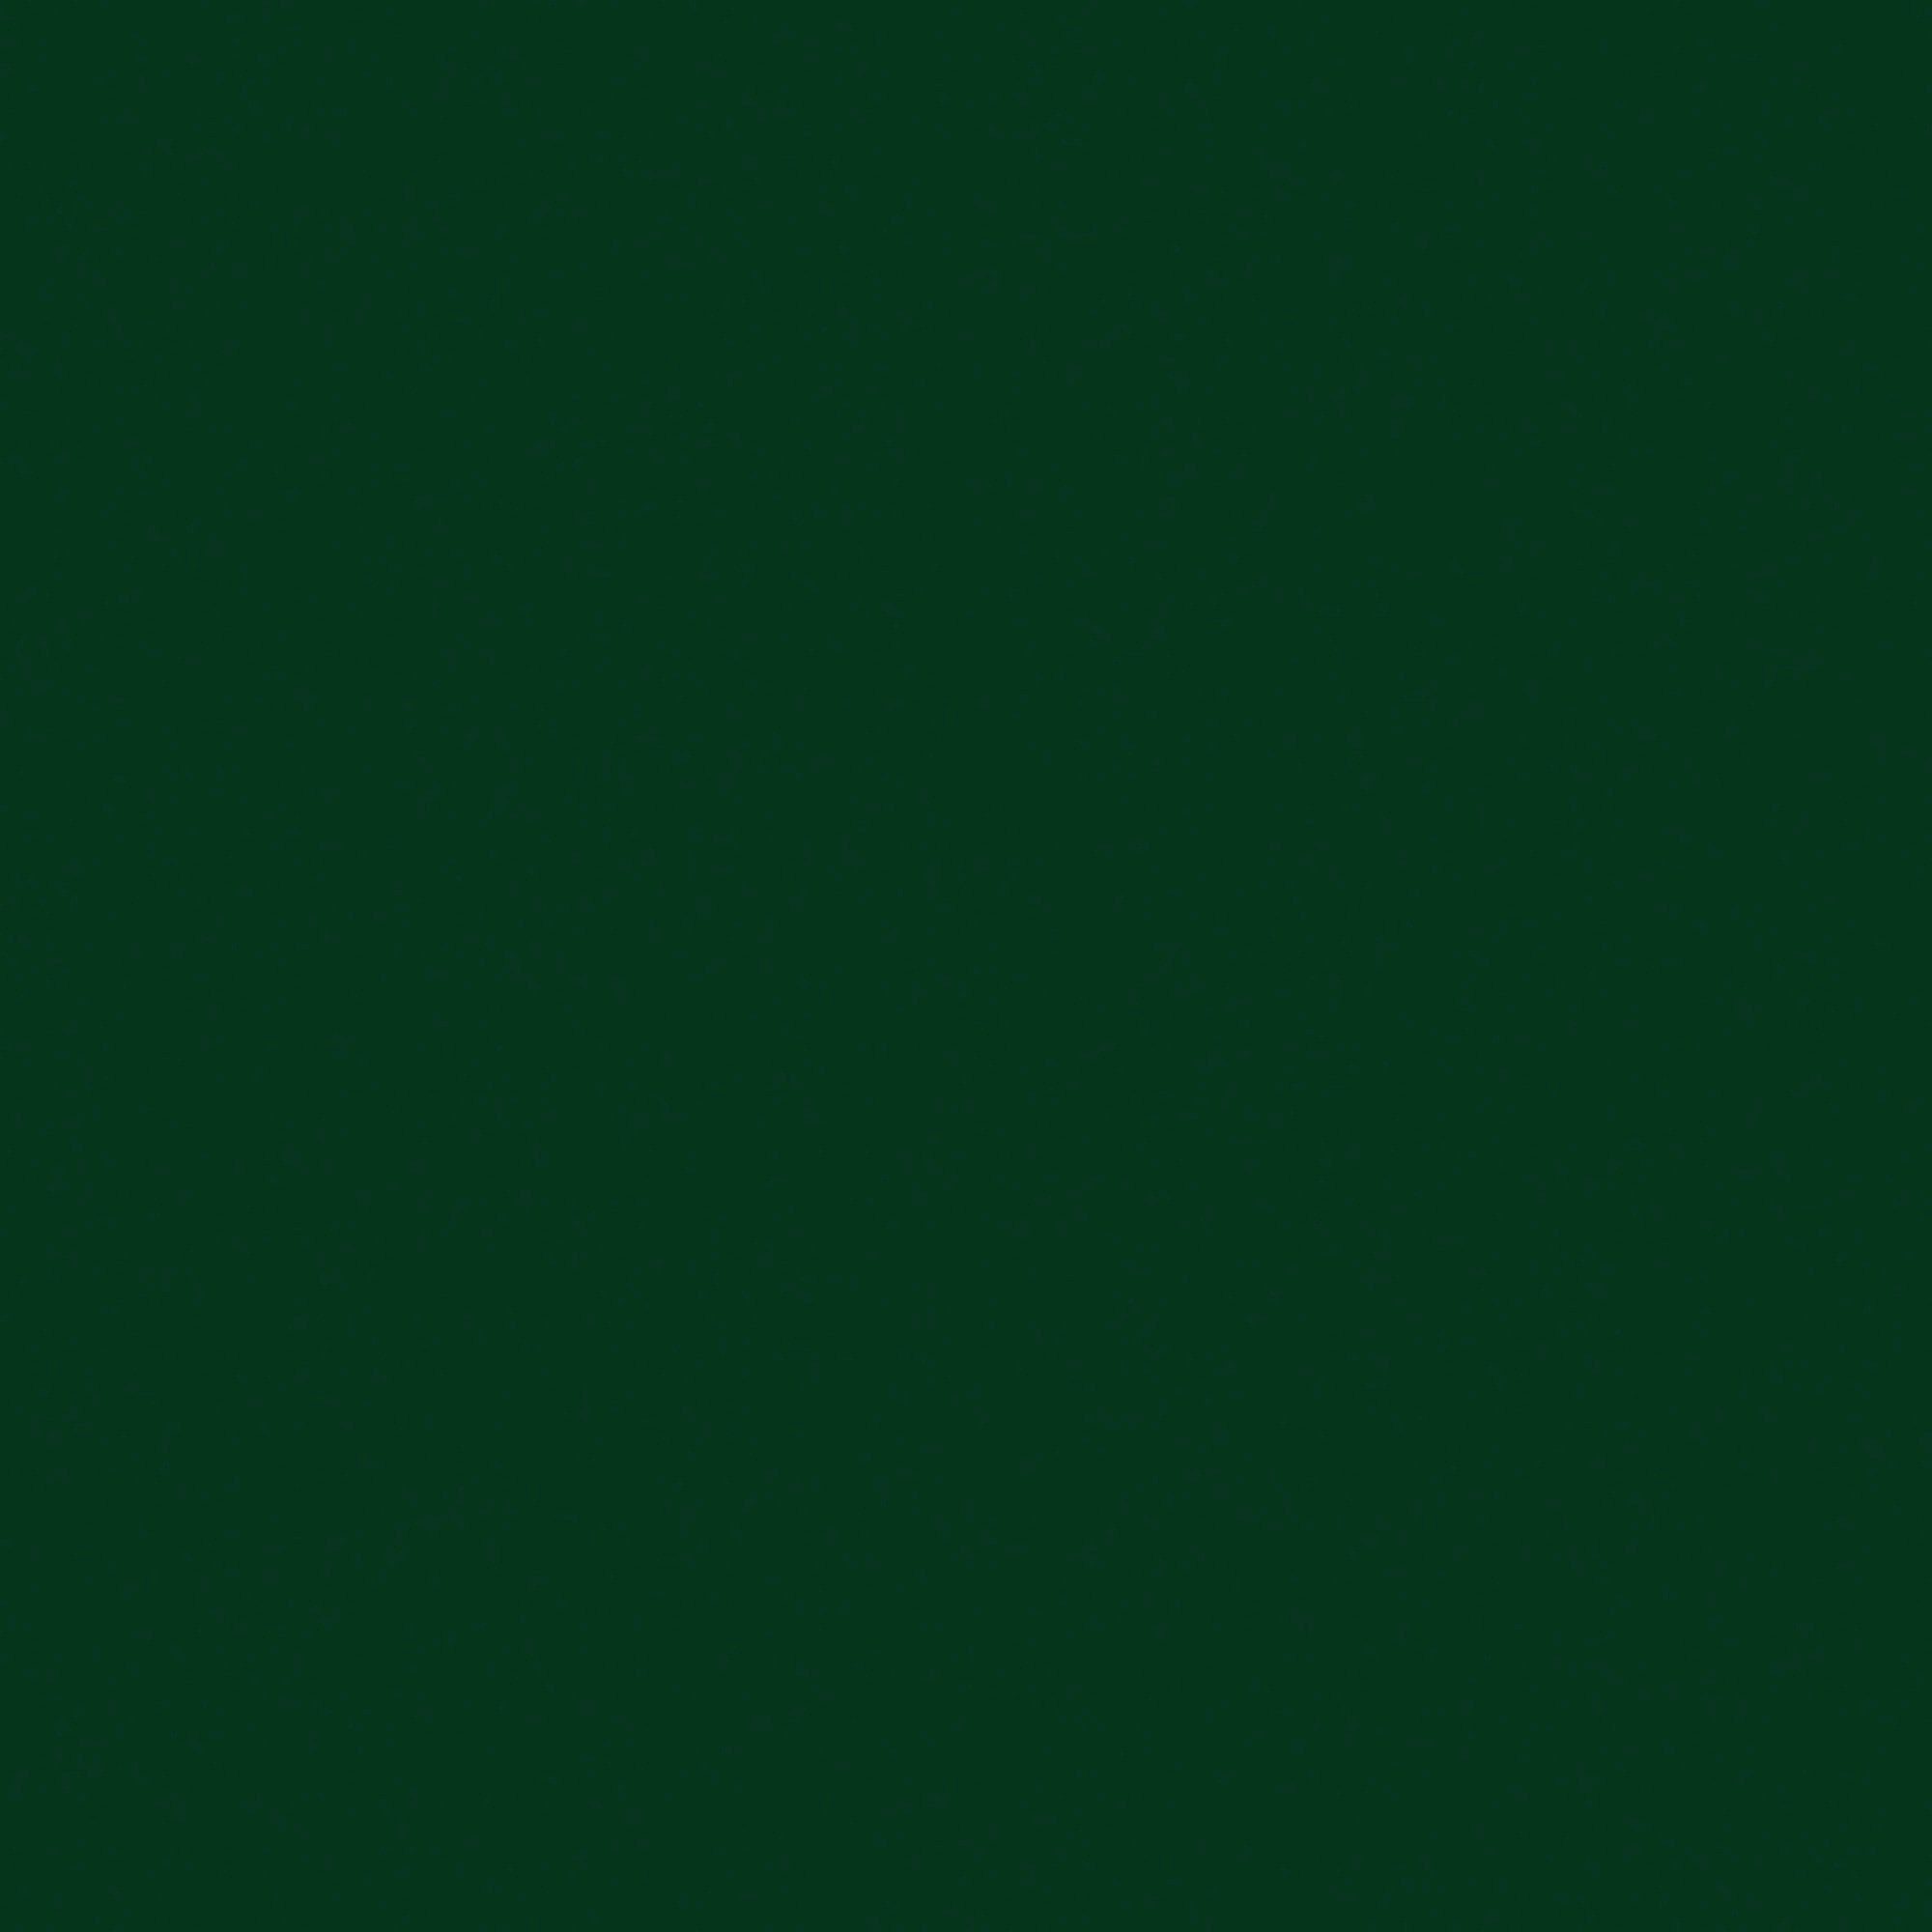 Hammerite  Metallschutzlack grün AUF Liter, ROST, glänzend 0,25 DIREKT